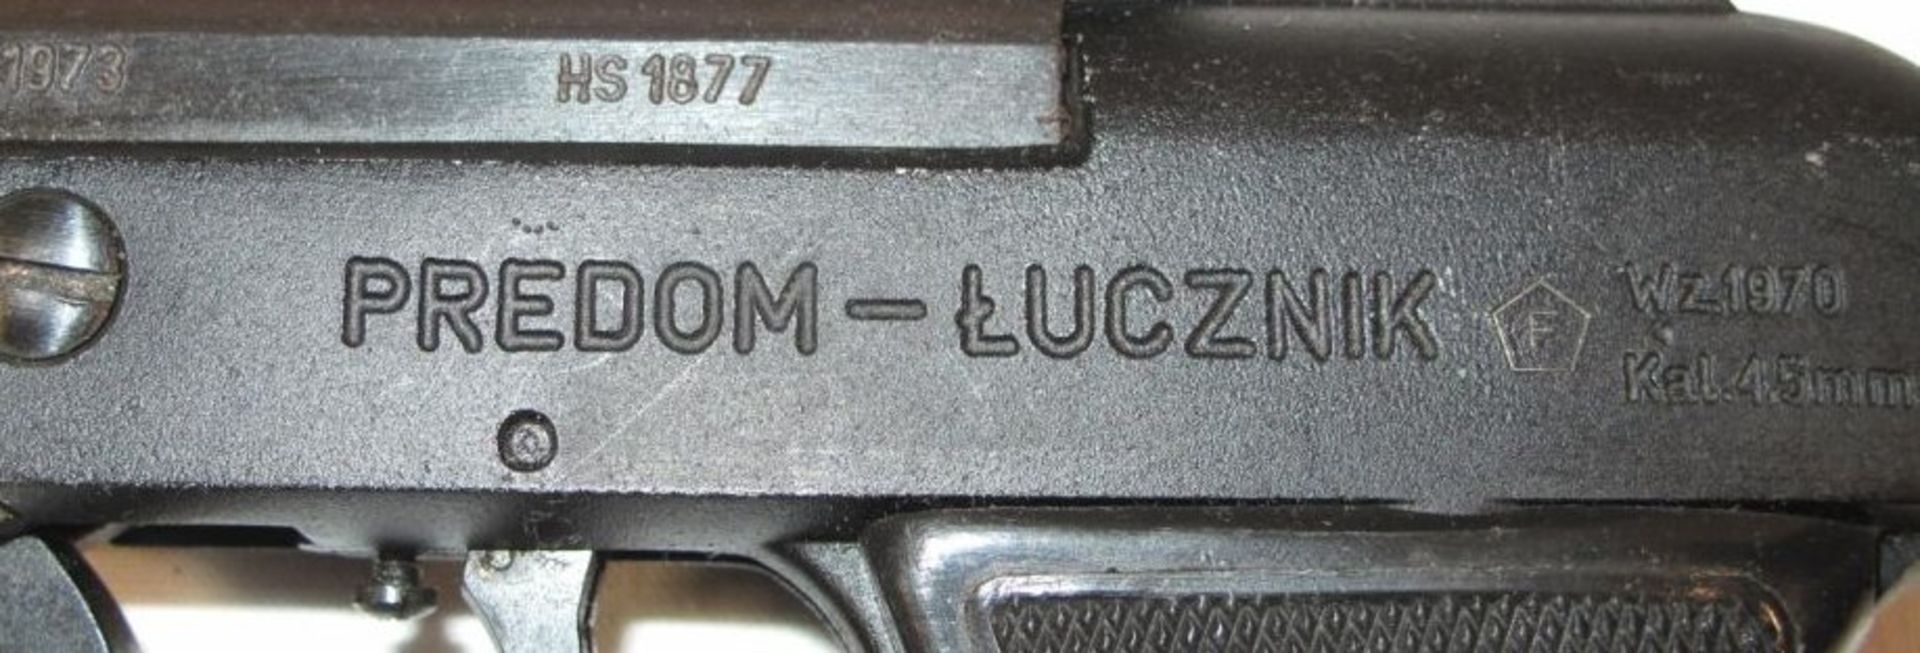 Luftpistole "PRedom-Lucznik" mit Futteral. - Bild 2 aus 2